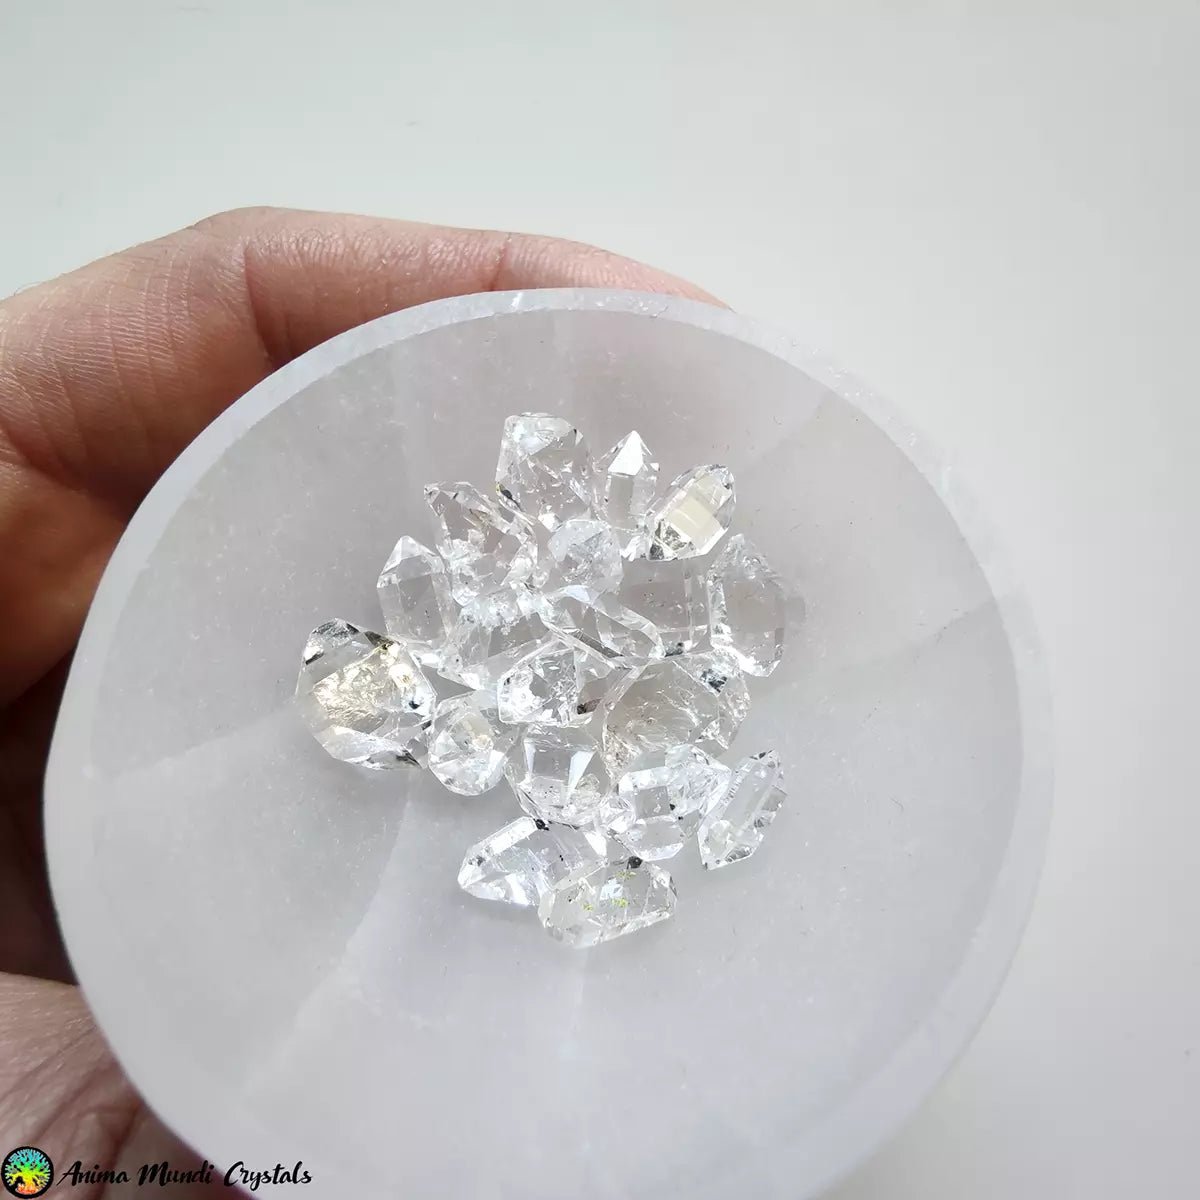 Über 10 mm große Diamantquarzkristalle – Anima Mundi-Kristalle